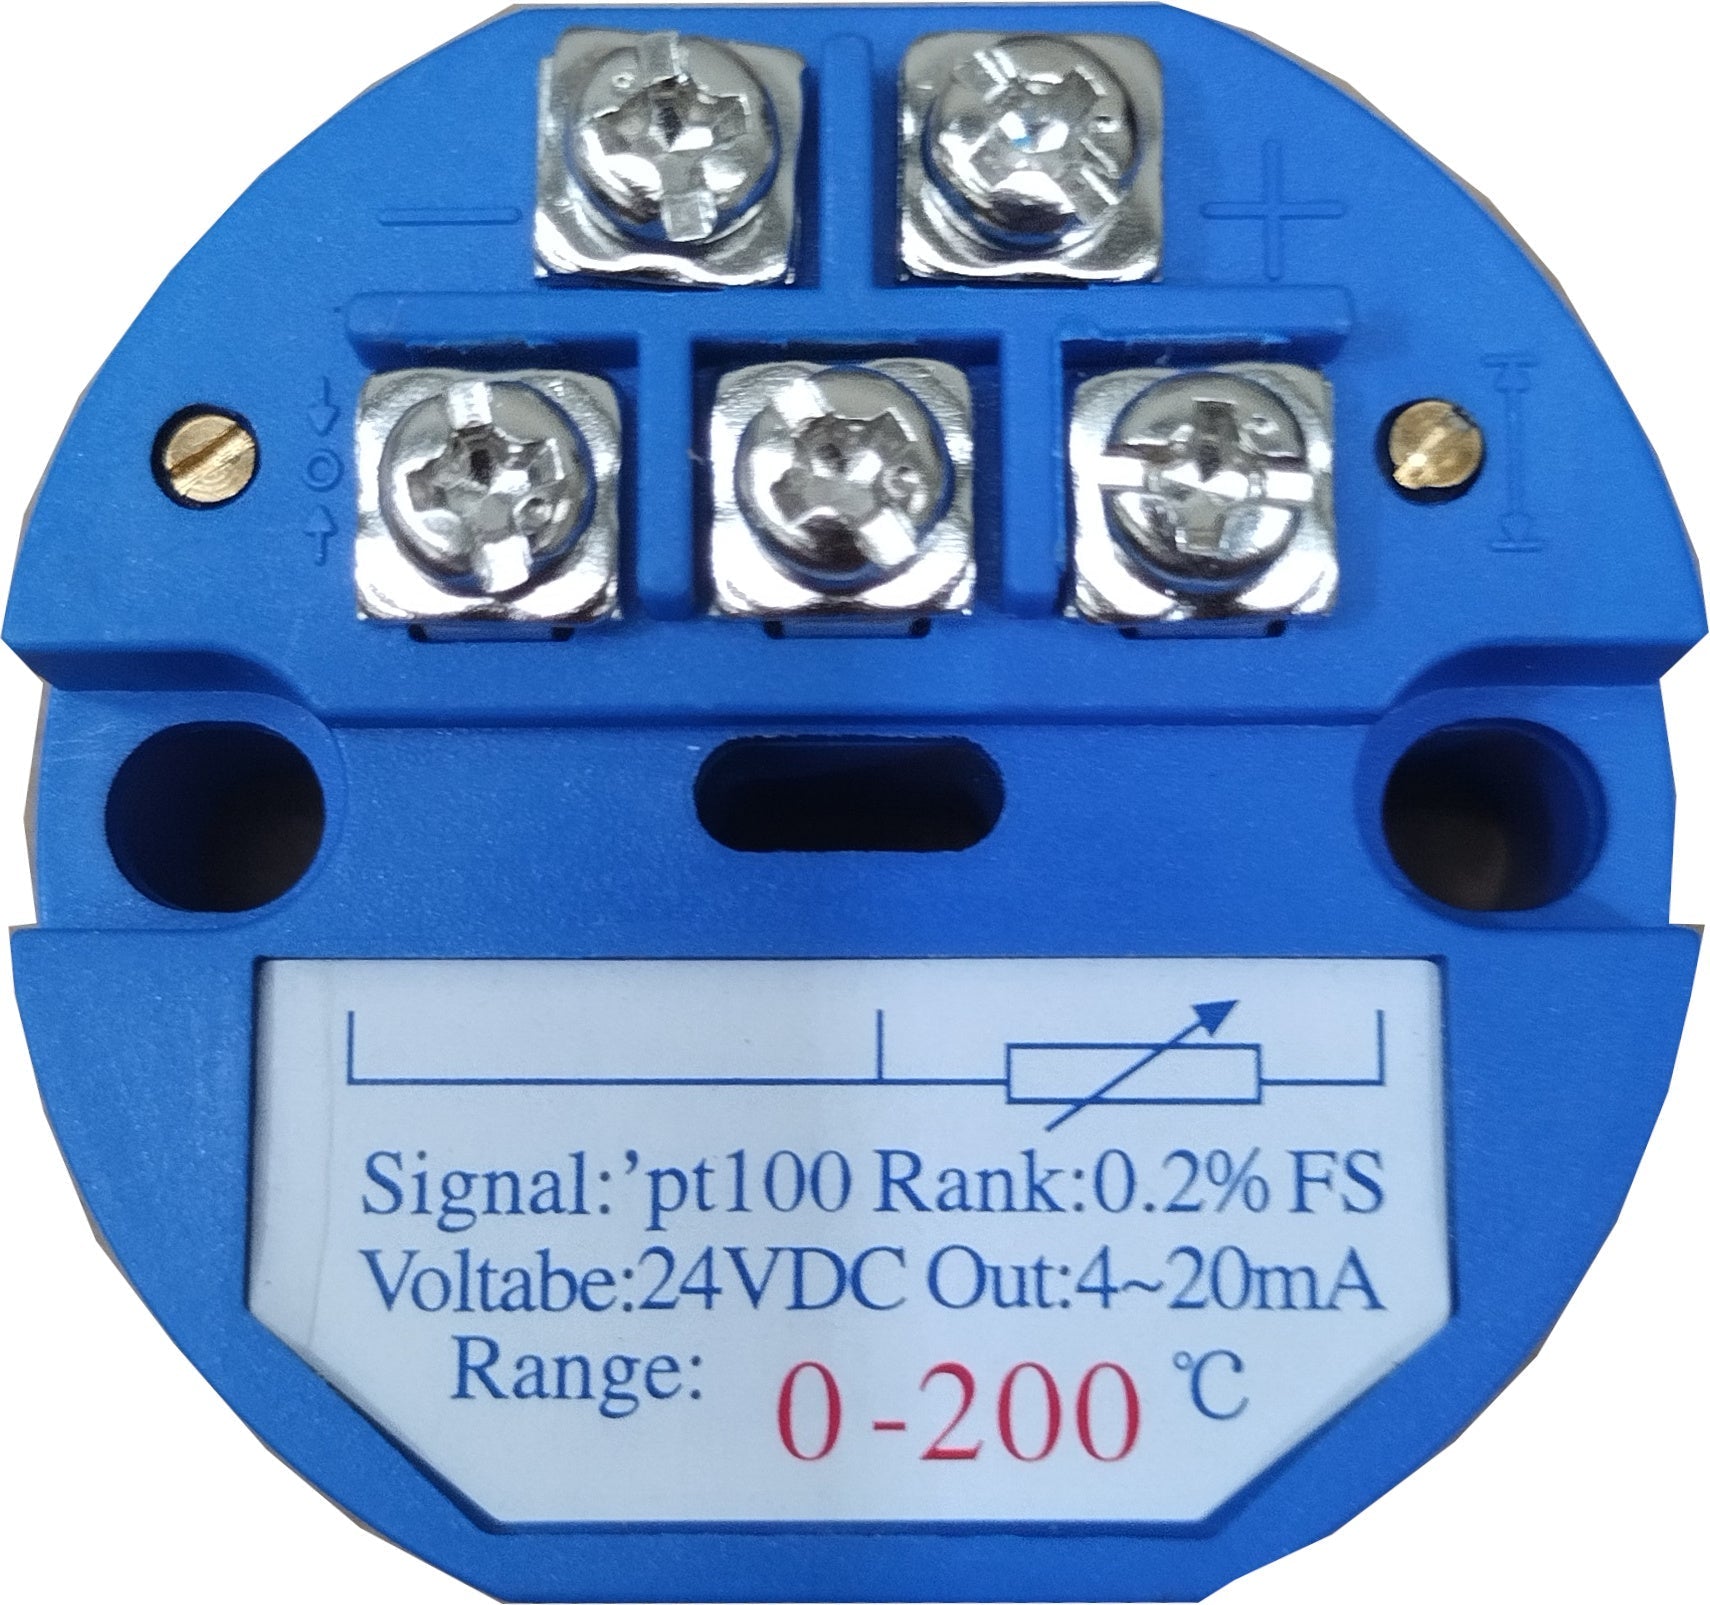 FRTD-Transmitter-0-400-420-24, Pt100 , 4-20mA Transmitter, 0 to 400 Deg C, 24VDC Supply